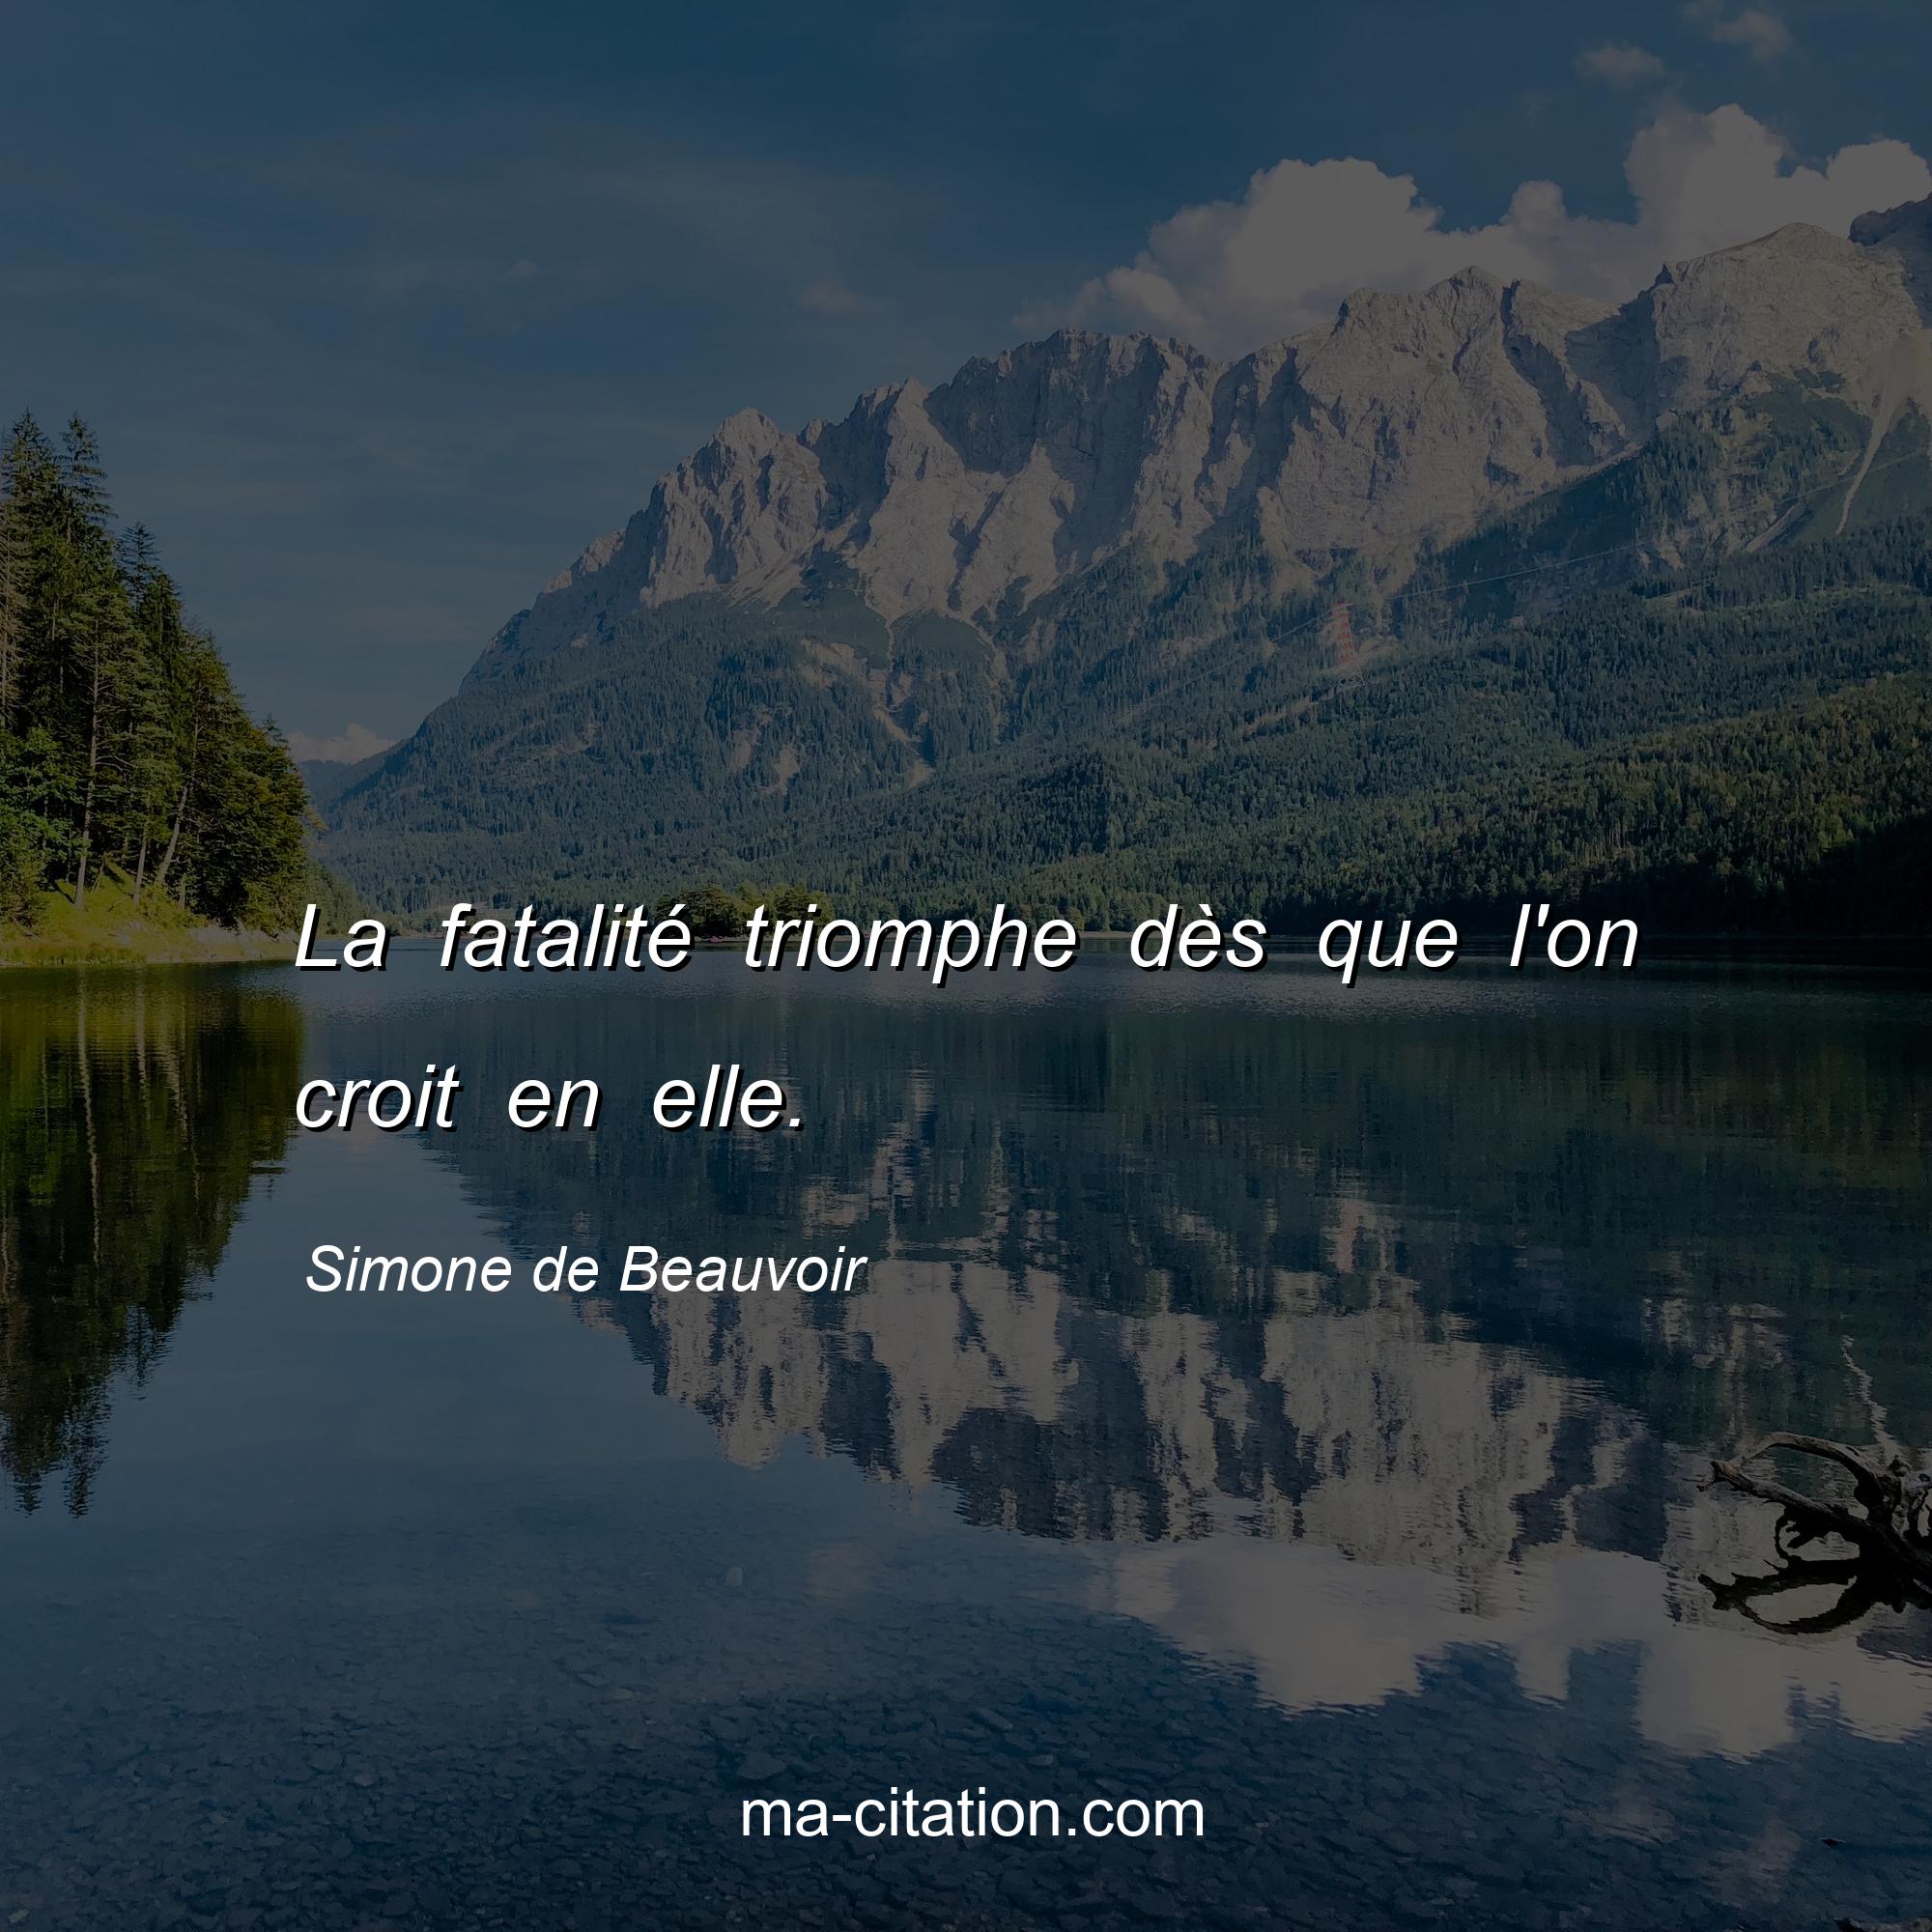 Simone de Beauvoir : La fatalité triomphe dès que l'on croit en elle.